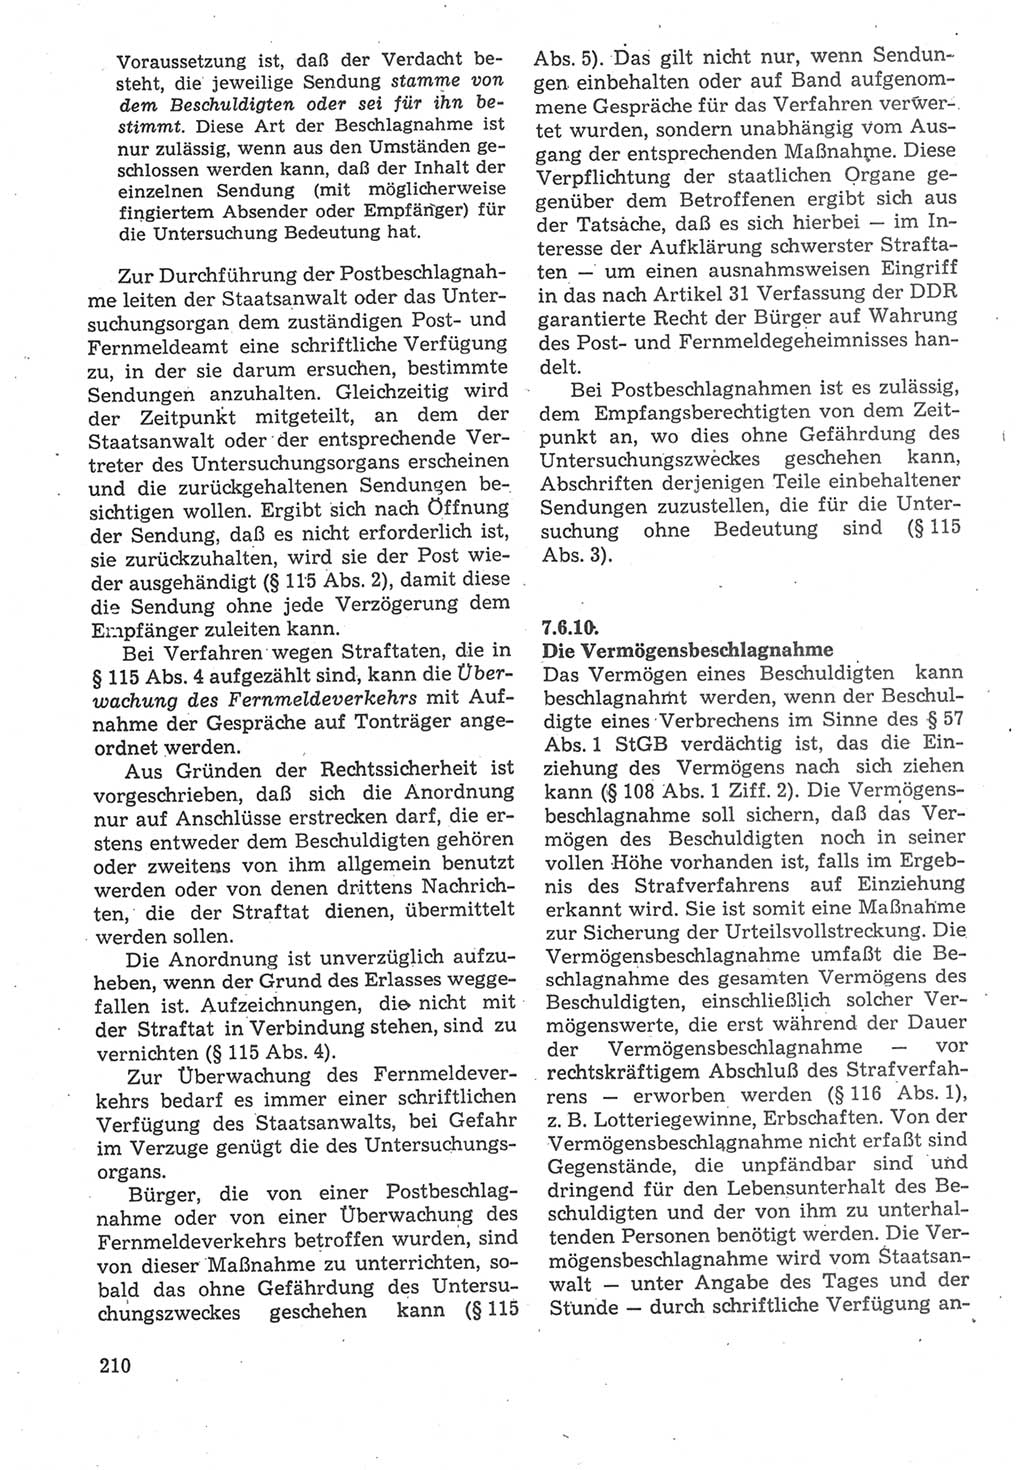 Strafverfahrensrecht [Deutsche Demokratische Republik (DDR)], Lehrbuch 1987, Seite 210 (Strafverf.-R. DDR Lb. 1987, S. 210)